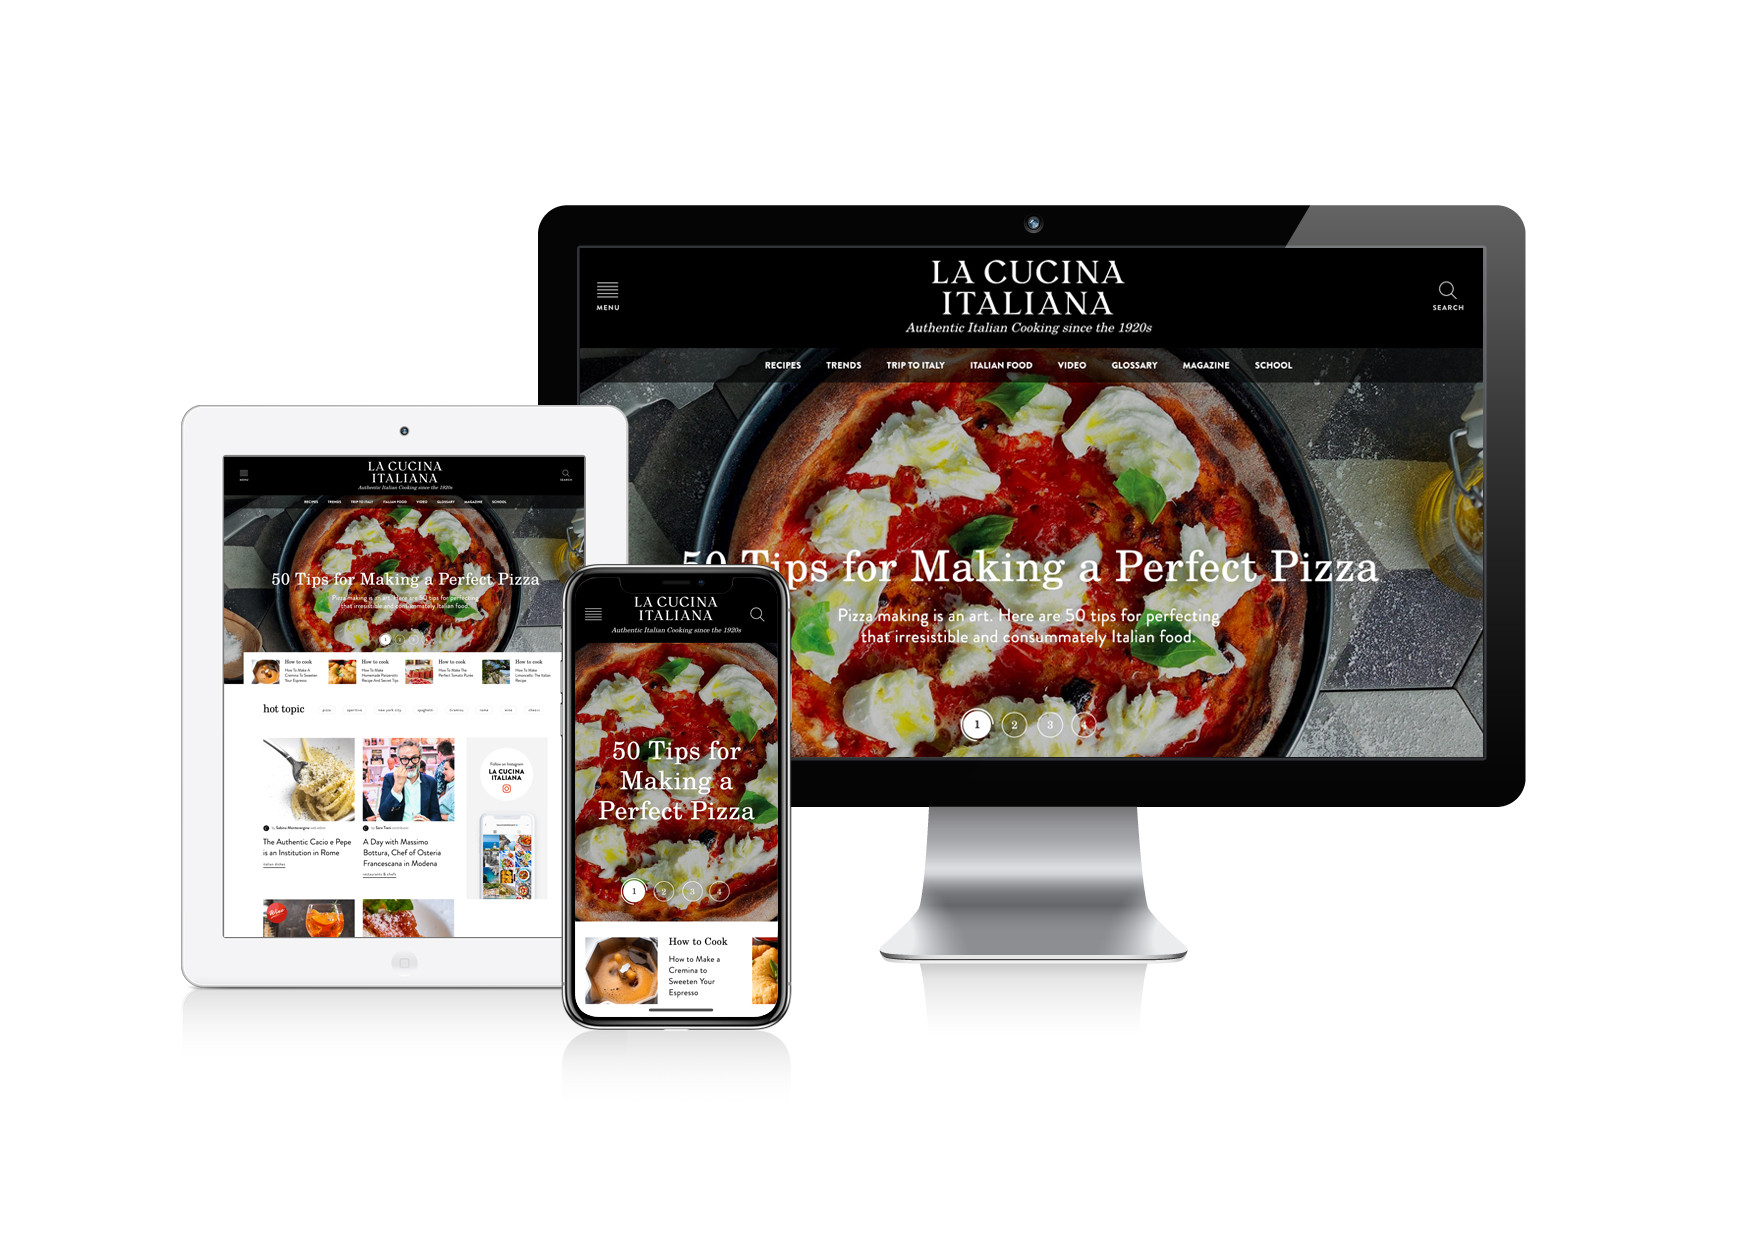 La Cucina Italiana diventa un brand globale e arriva negli Stati Uniti con un sito, un trimestrale e una newsletter